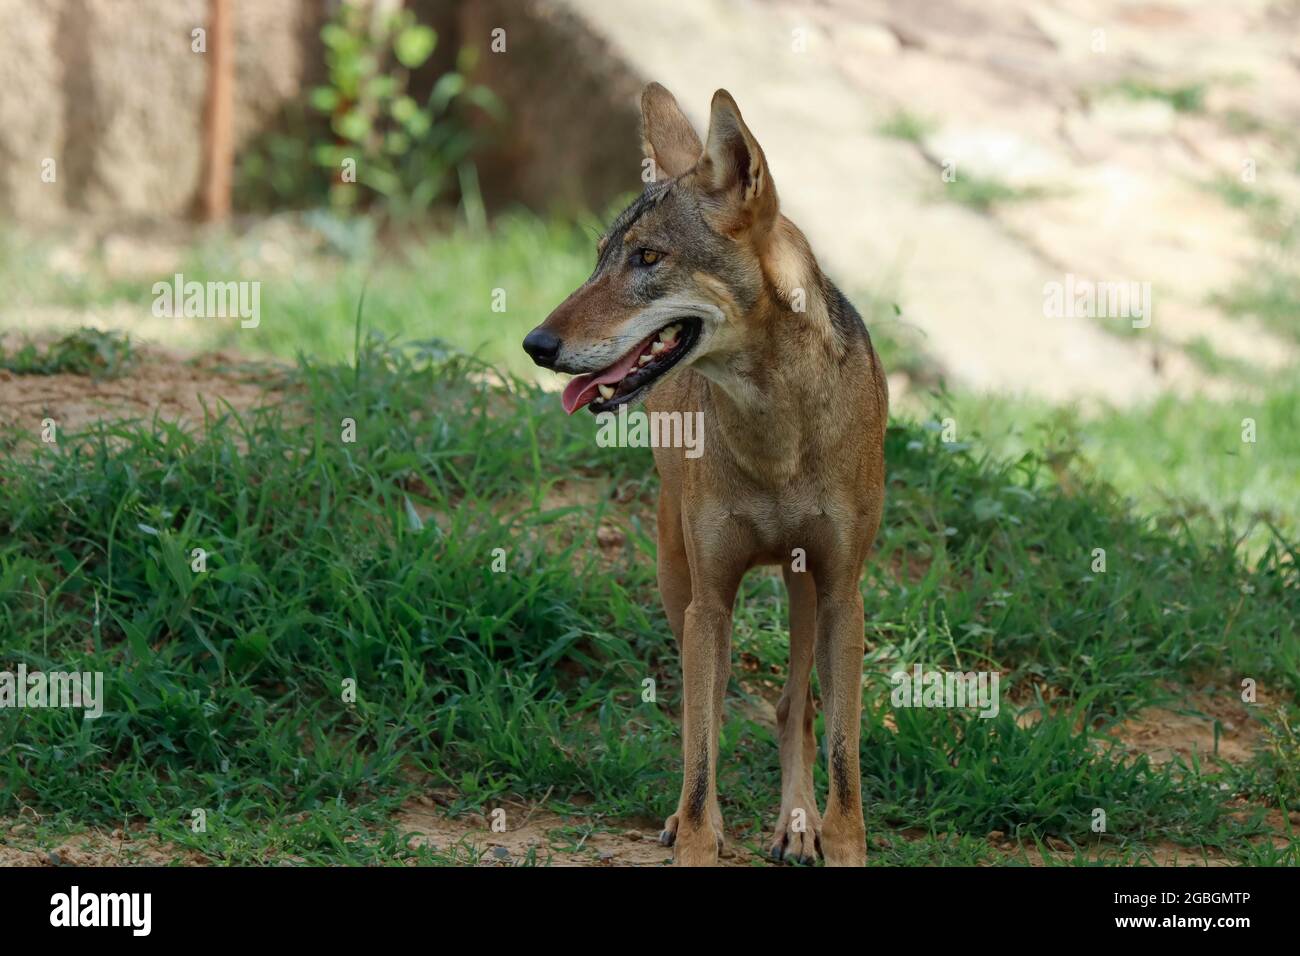 Un lupo indiano (Canis lupus pallipes) si trova sulla roccia, che è una sottospecie di lupo grigio che spazia dal sud-ovest asiatico al subcontin indiano Foto Stock